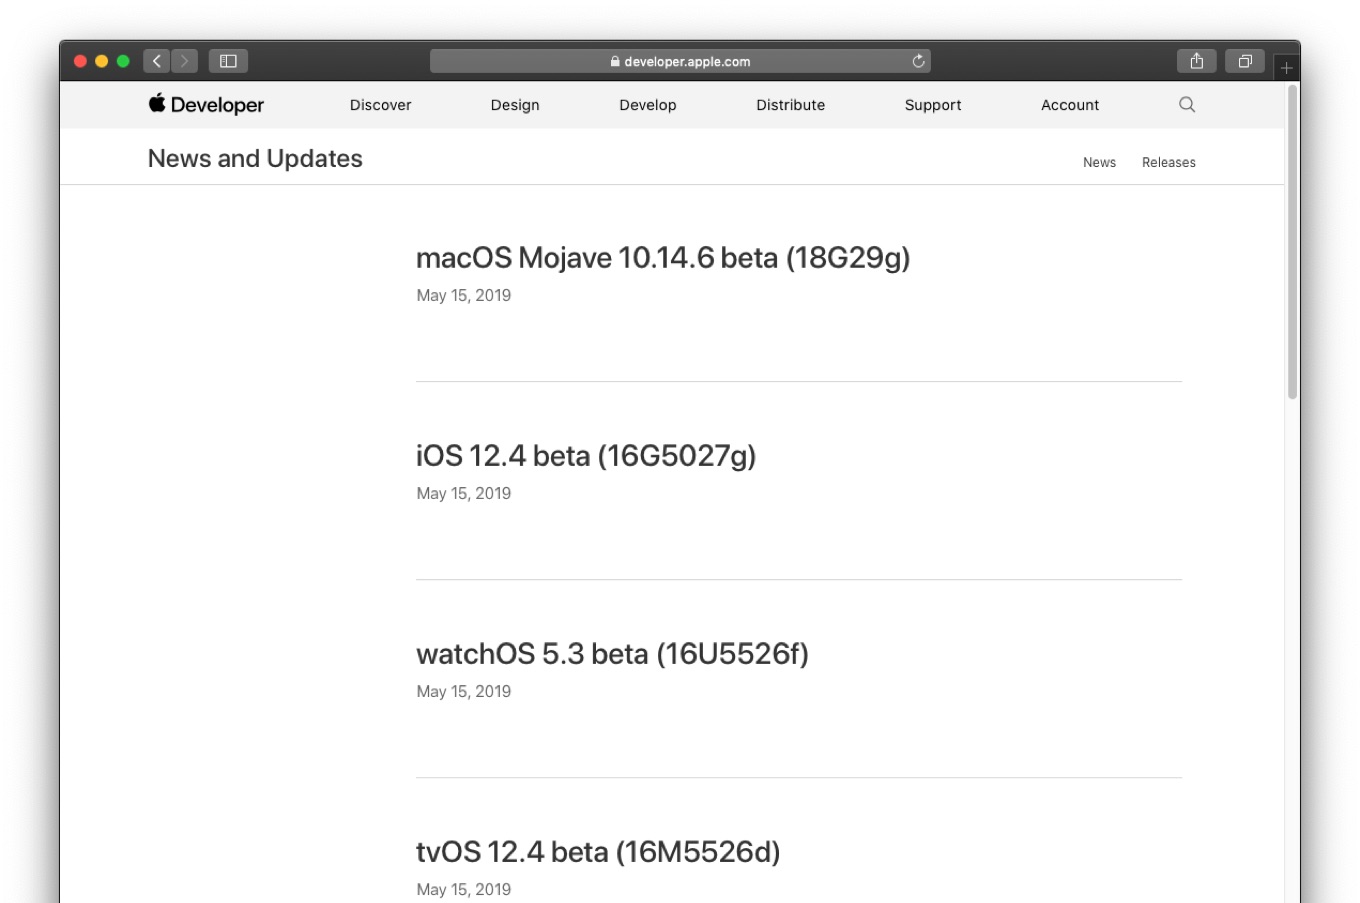  macOS Mojave 10.14.6 beta (18G29g)